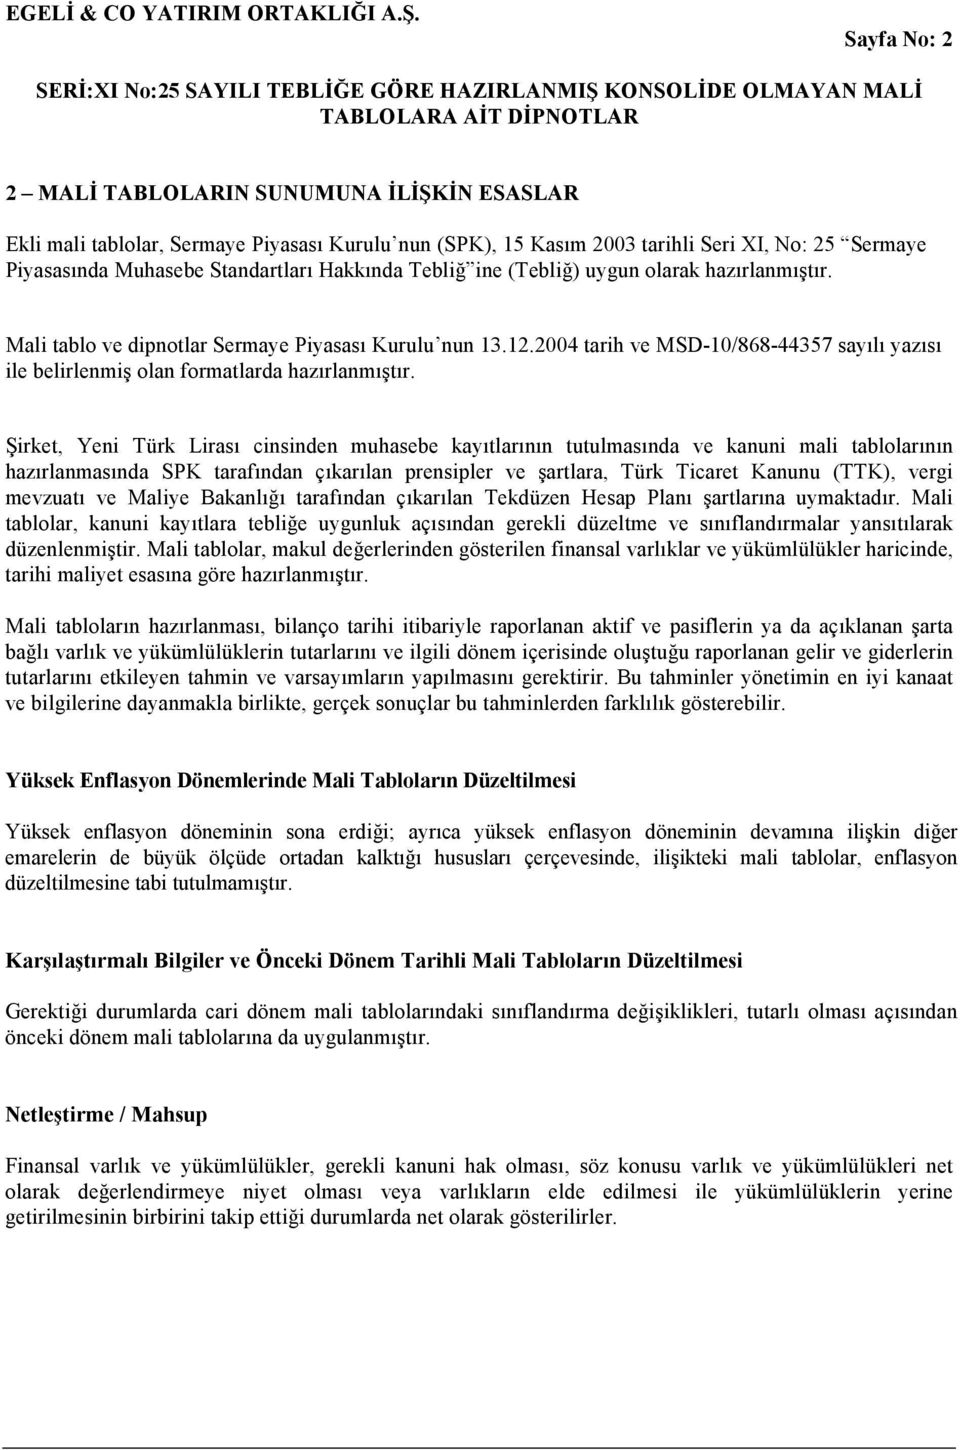 Şirket, Yeni Türk Lirası cinsinden muhasebe kayıtlarının tutulmasında ve kanuni mali tablolarının hazırlanmasında SPK tarafından çıkarılan prensipler ve şartlara, Türk Ticaret Kanunu (TTK), vergi